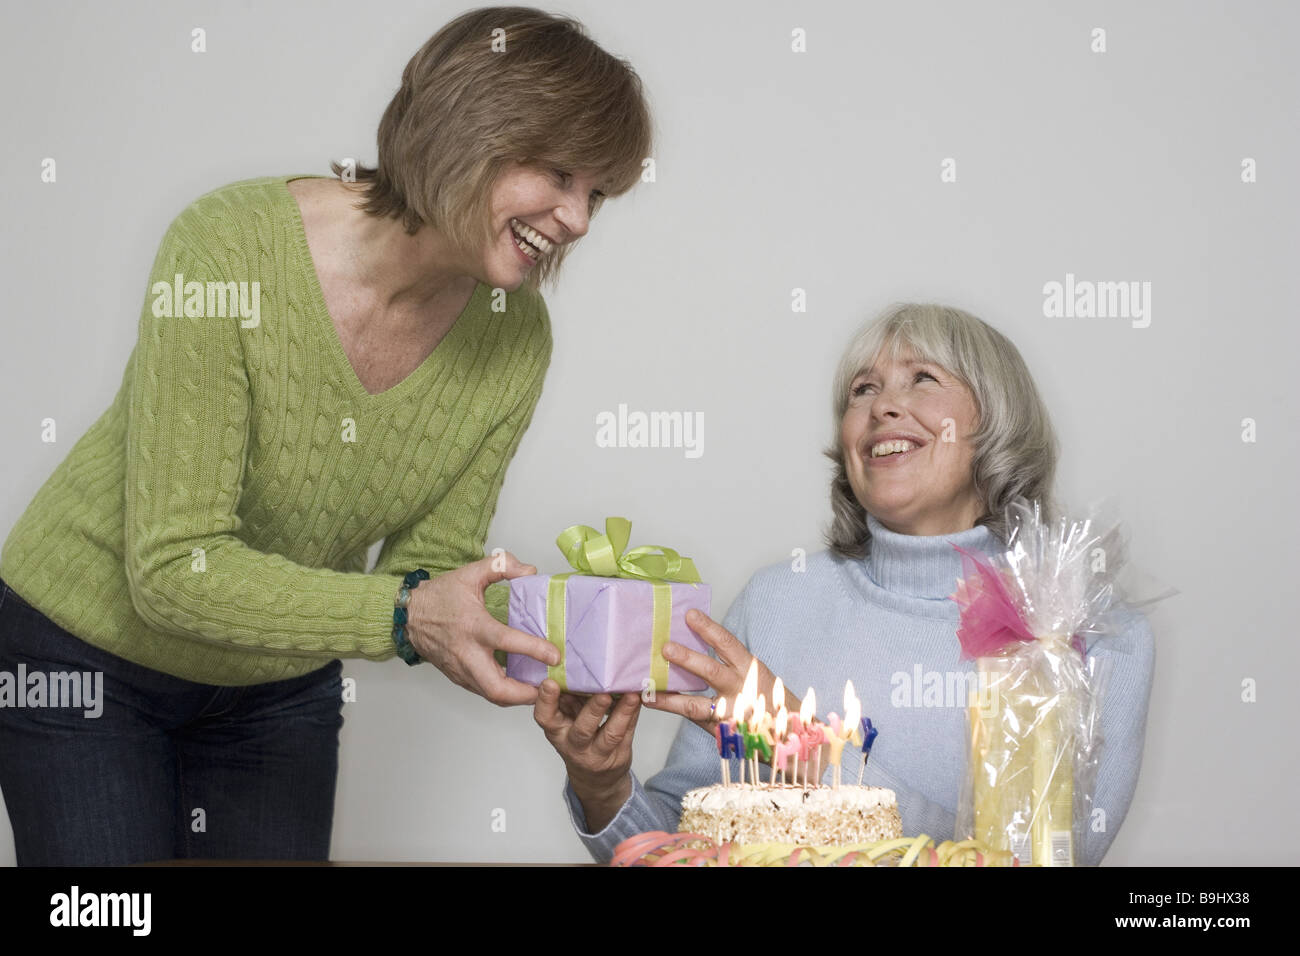 Senior Geburtstagsgeschenk Frau Frohlich Detail Serie Menschen Geben Senioren Frauen Freunde Freundschaft Geburtstagsgeschenke Geburtstag Kuchen Stockfotografie Alamy